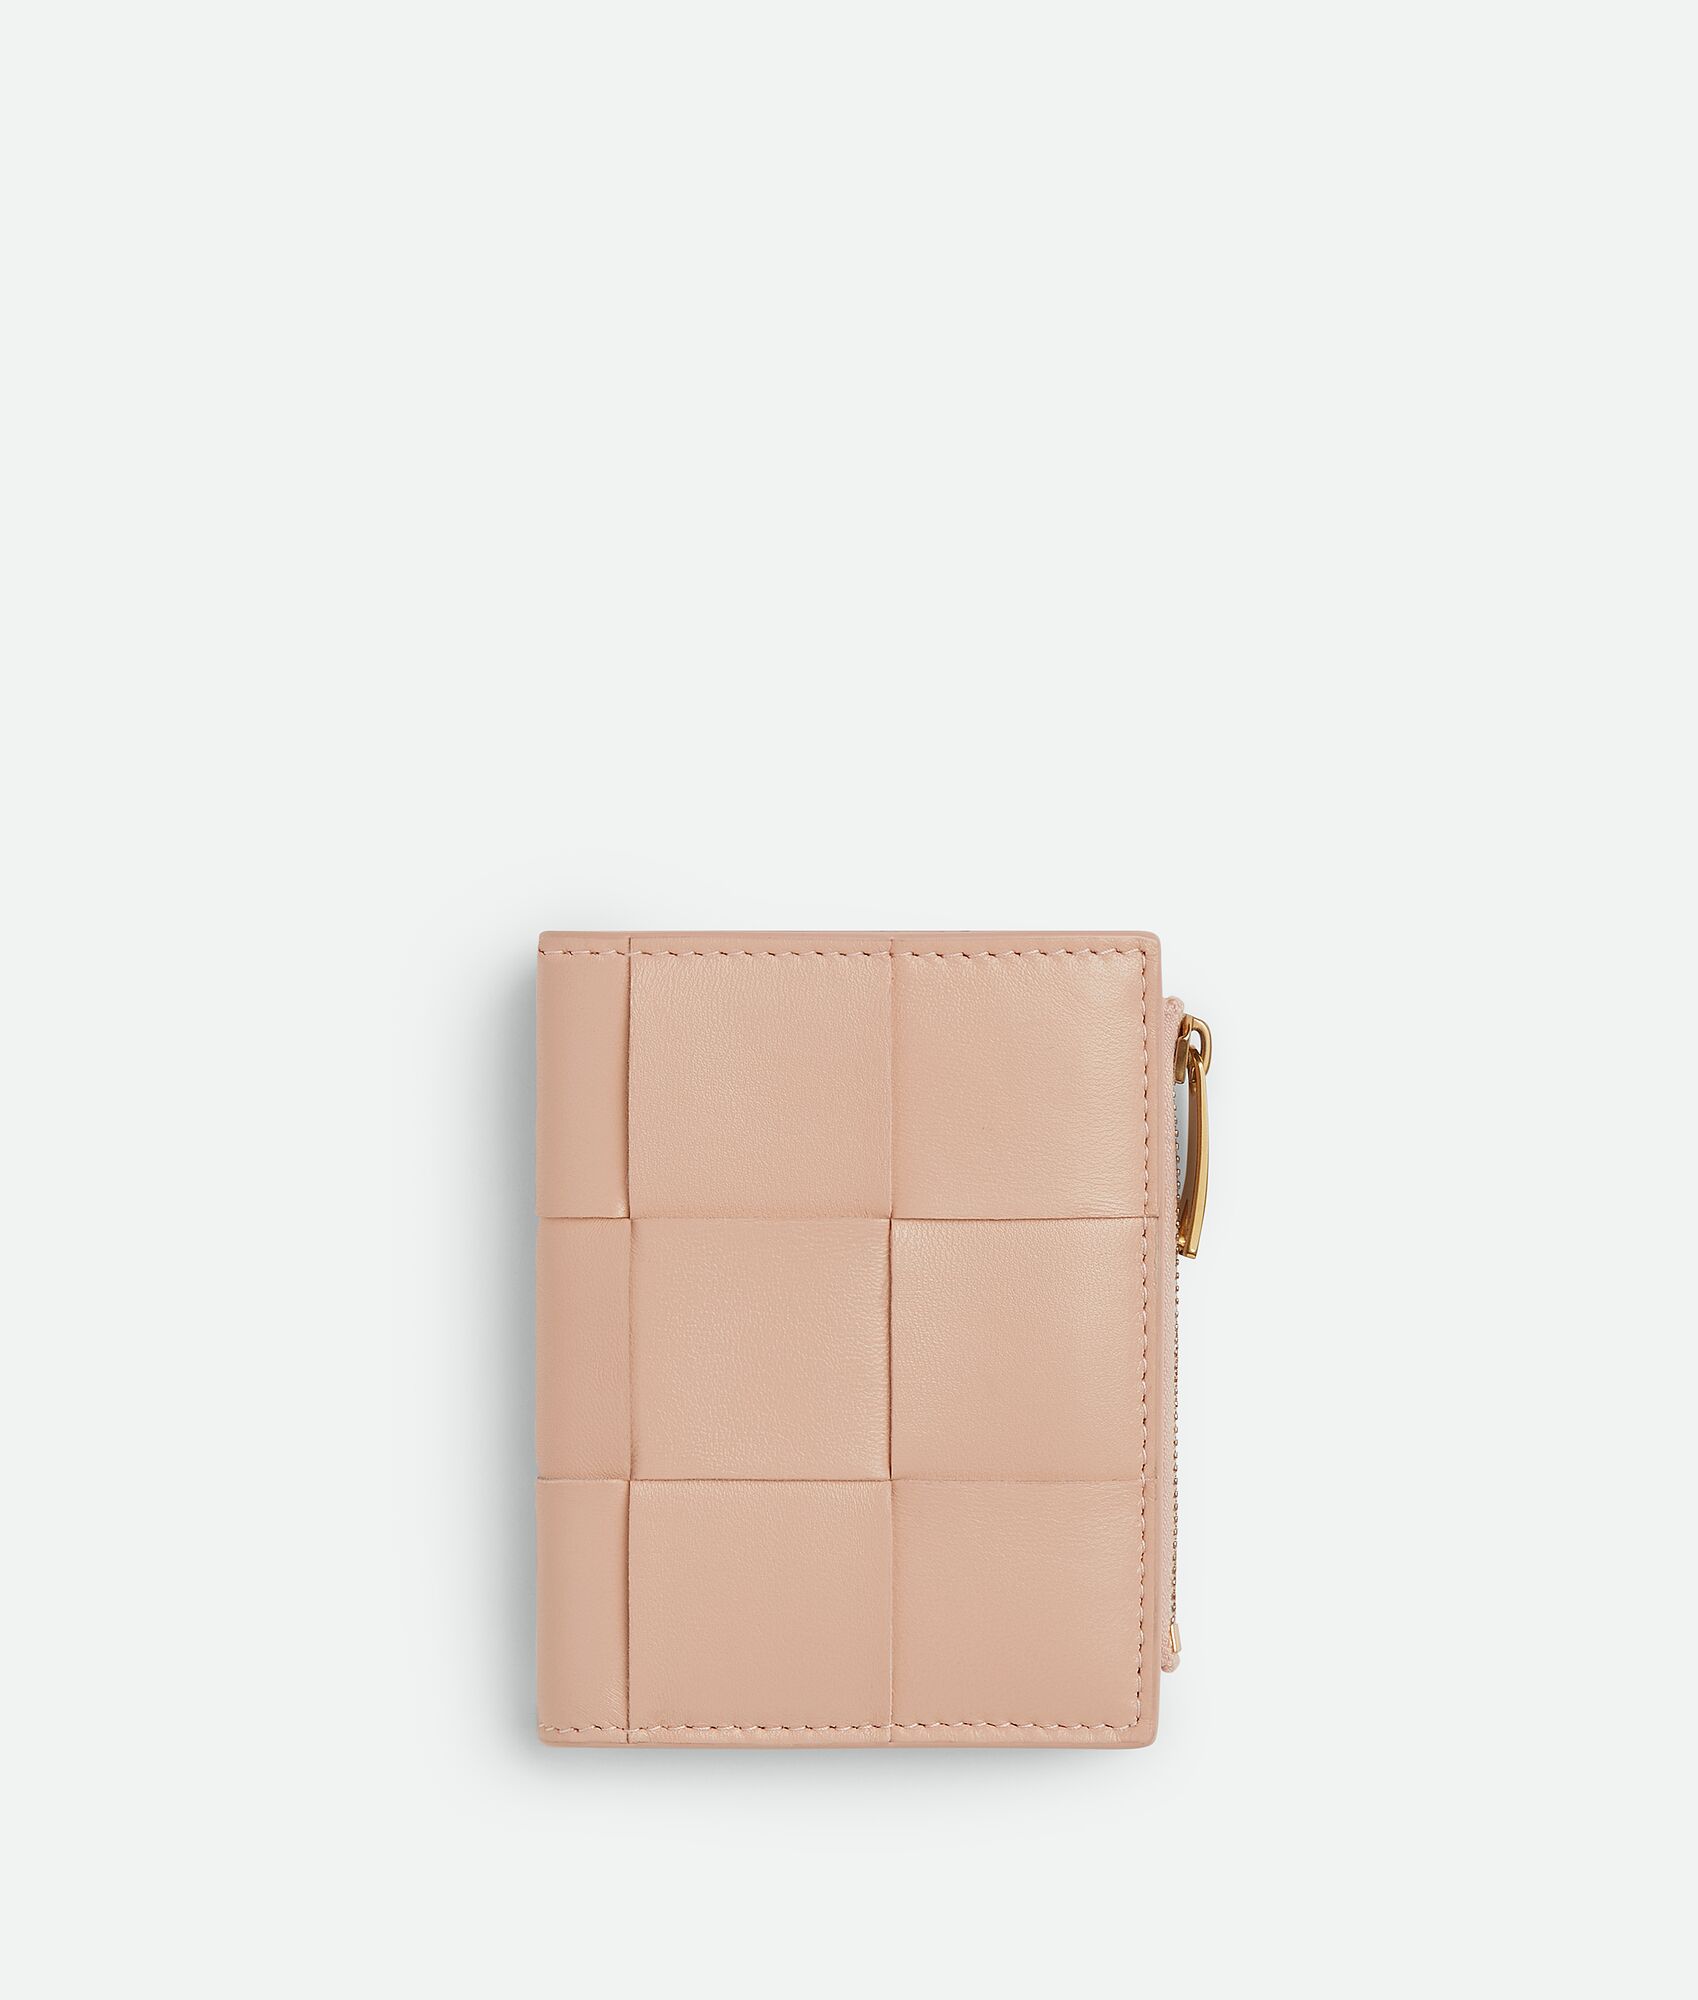 40代女性におすすめなセンスのいいレディース財布は、ボッテガ・ヴェネタのスモール カセット 二つ折りファスナーウォレット